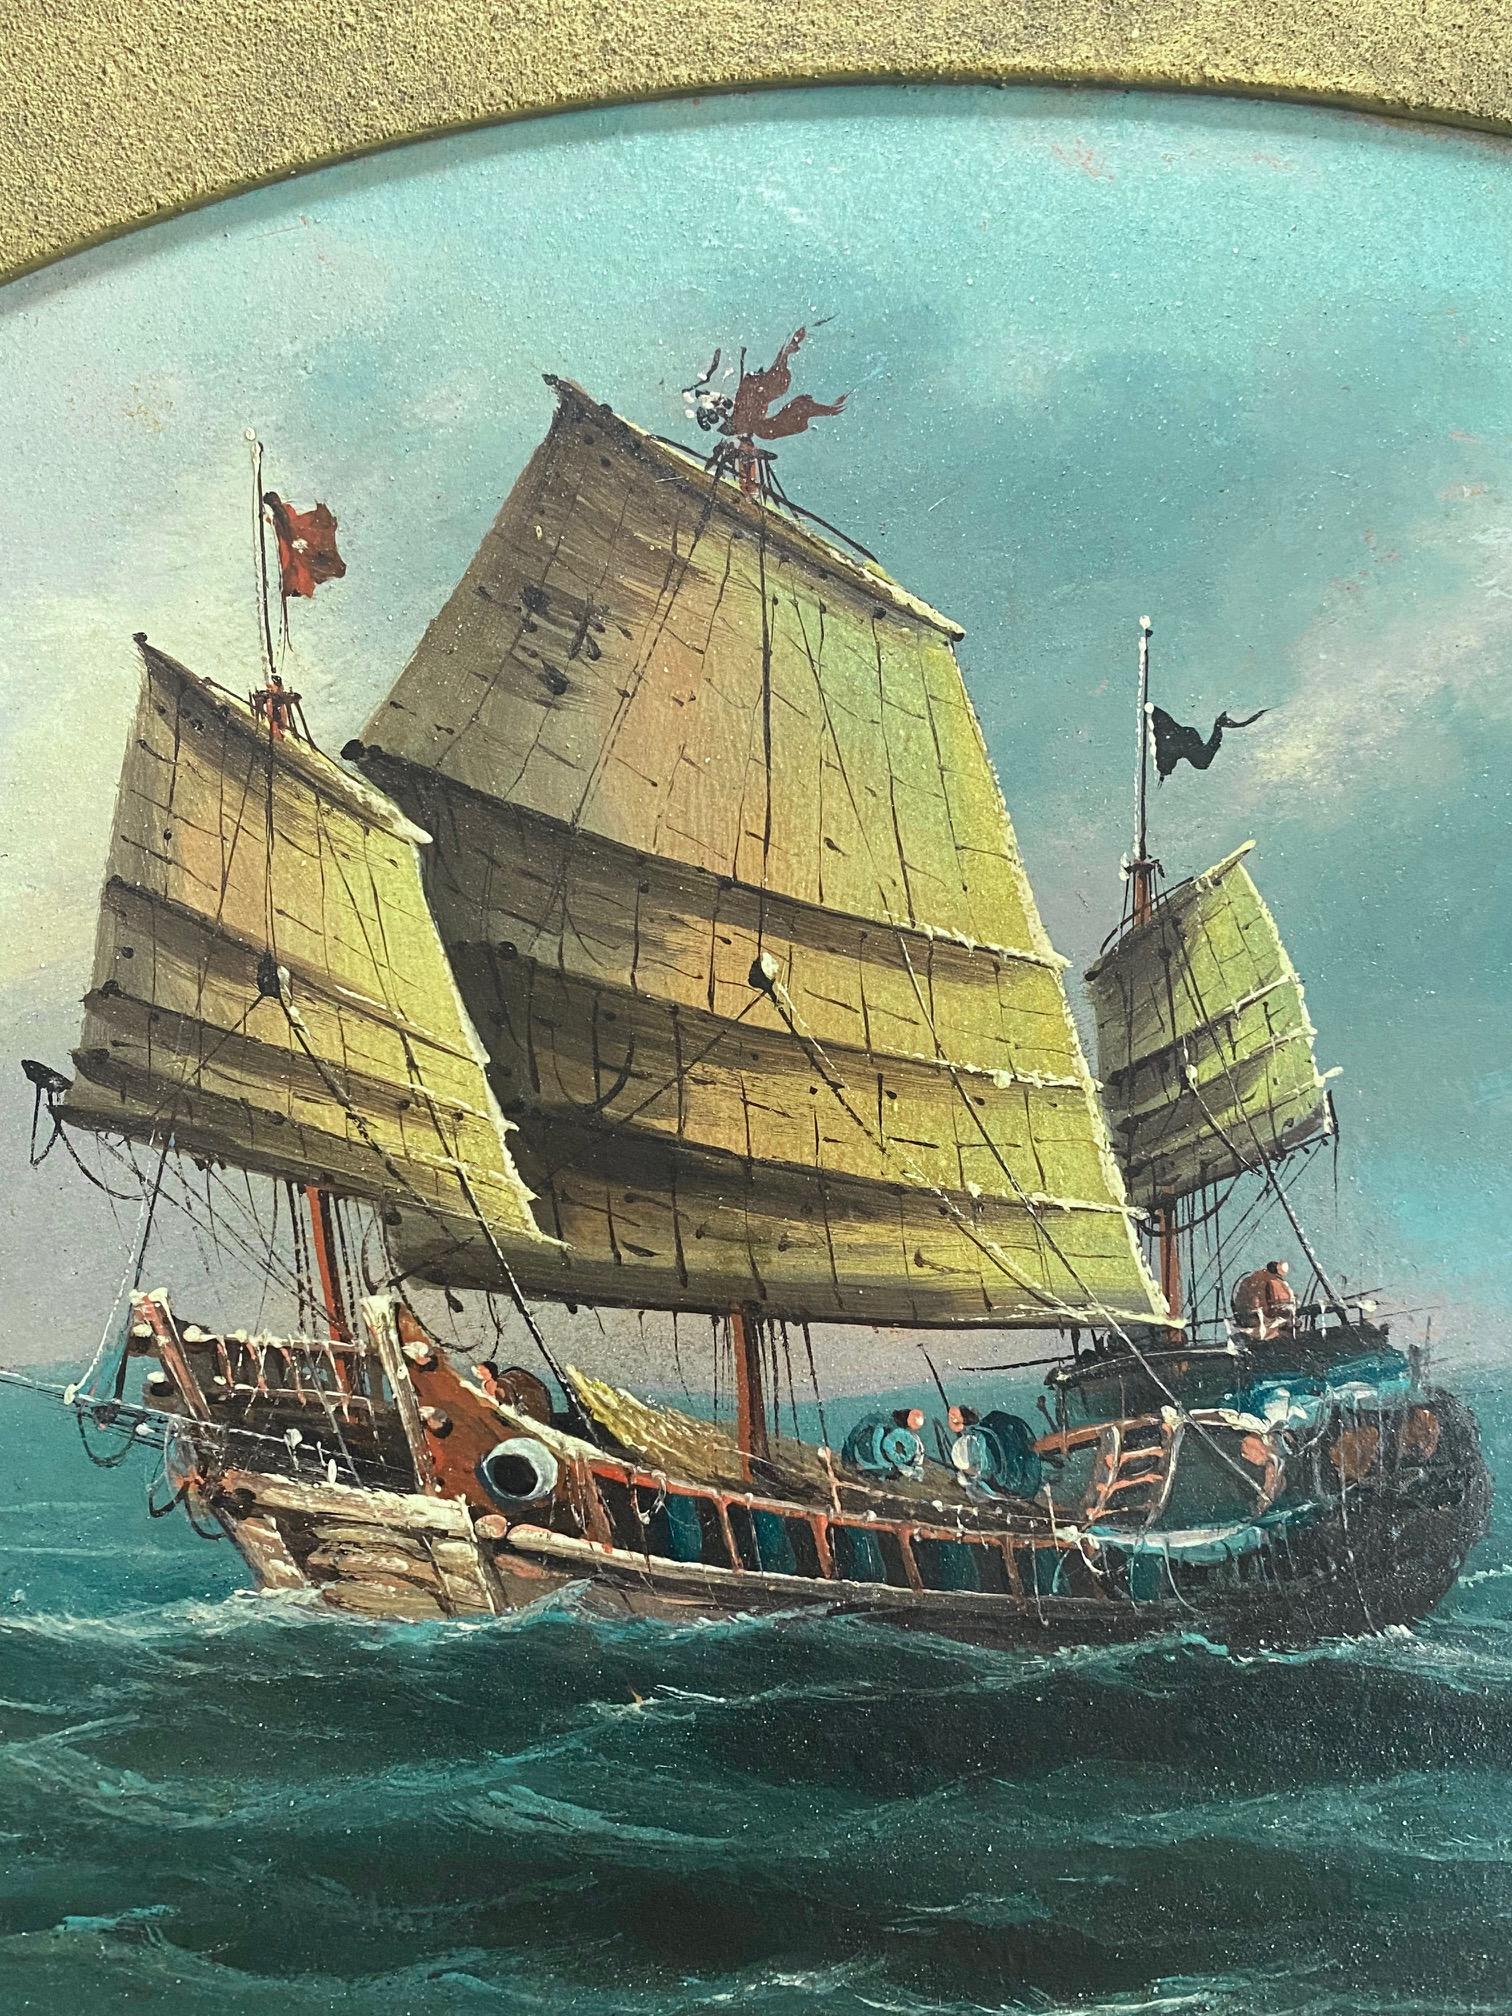 Paysage marin de commerce chinois du XIXe siècle avec une jonque, par Lee Heng, vers 1870, une huile sur panneau avec une grande jonque chinoise à pleine voile au premier plan, quatre autres embarcations à l'arrière-plan (dont deux pourraient être